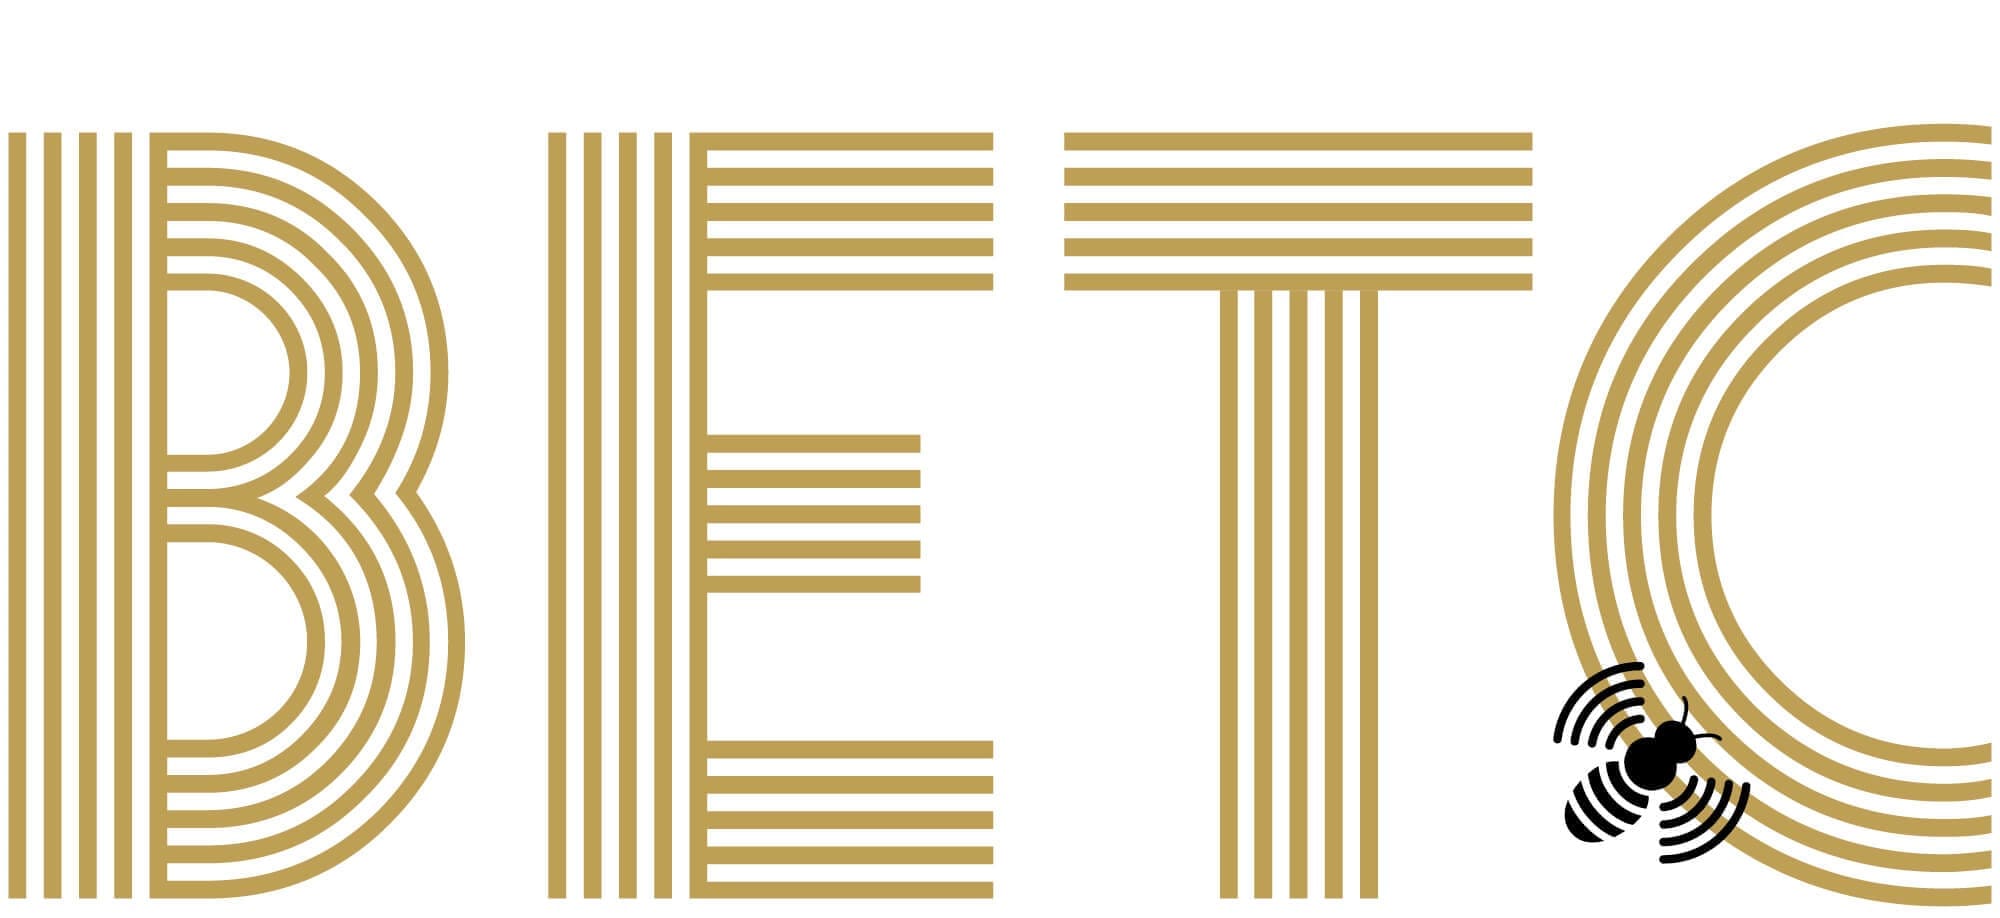 L'identité de l'agence de publicité BETC, deux couleurs or et noir, une typographie vivante et une abeille libre comme l’air, design IchetKar